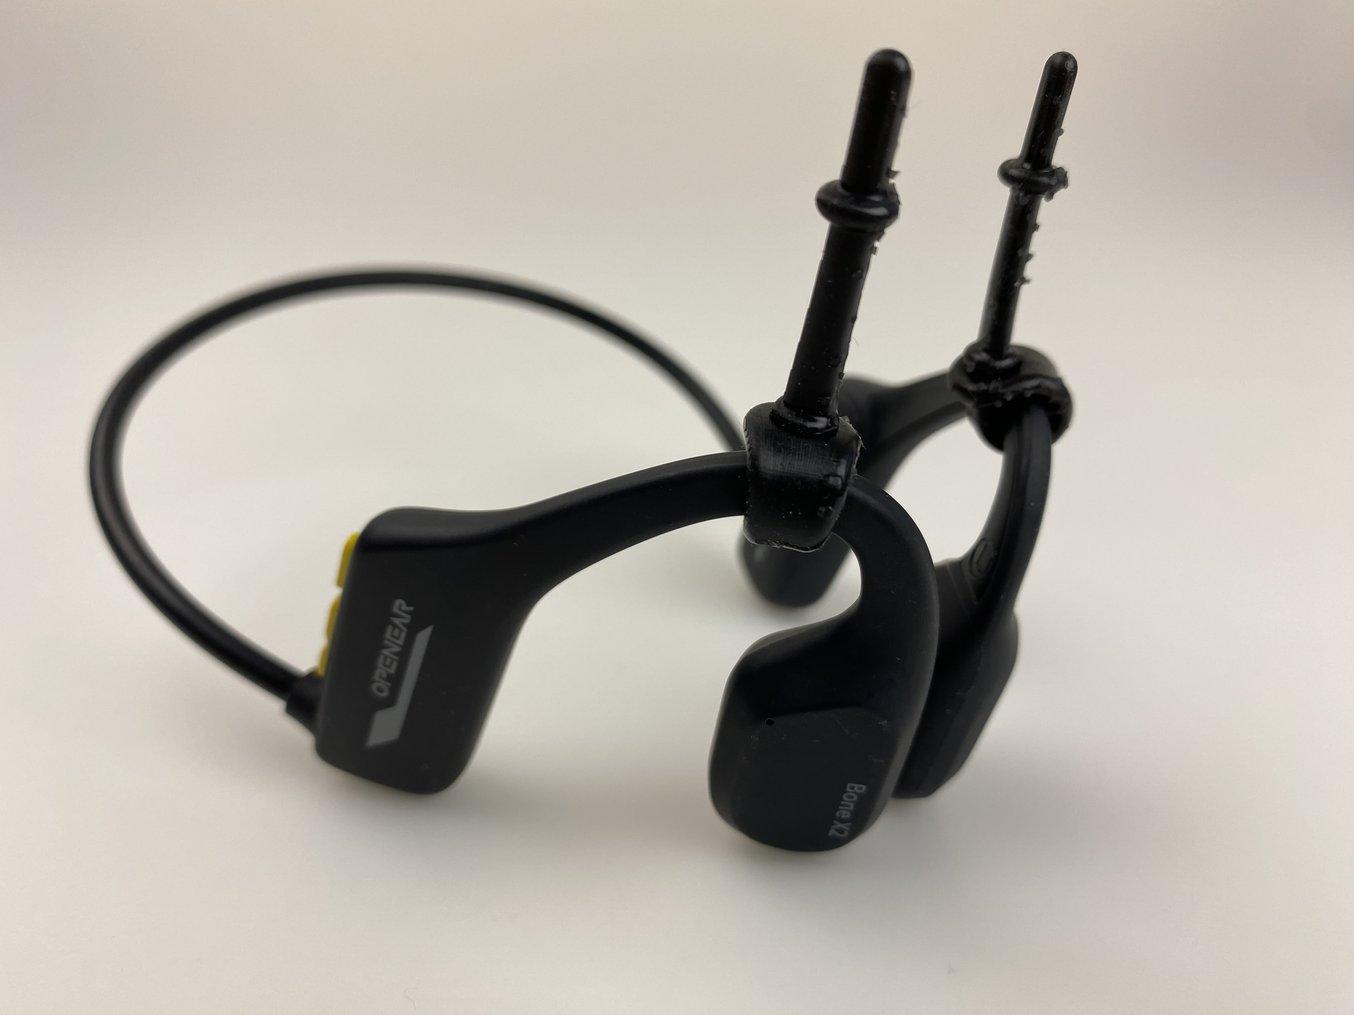 该团队开发了一个小型硅胶附件来固定耳机，并额外增加稳定性。